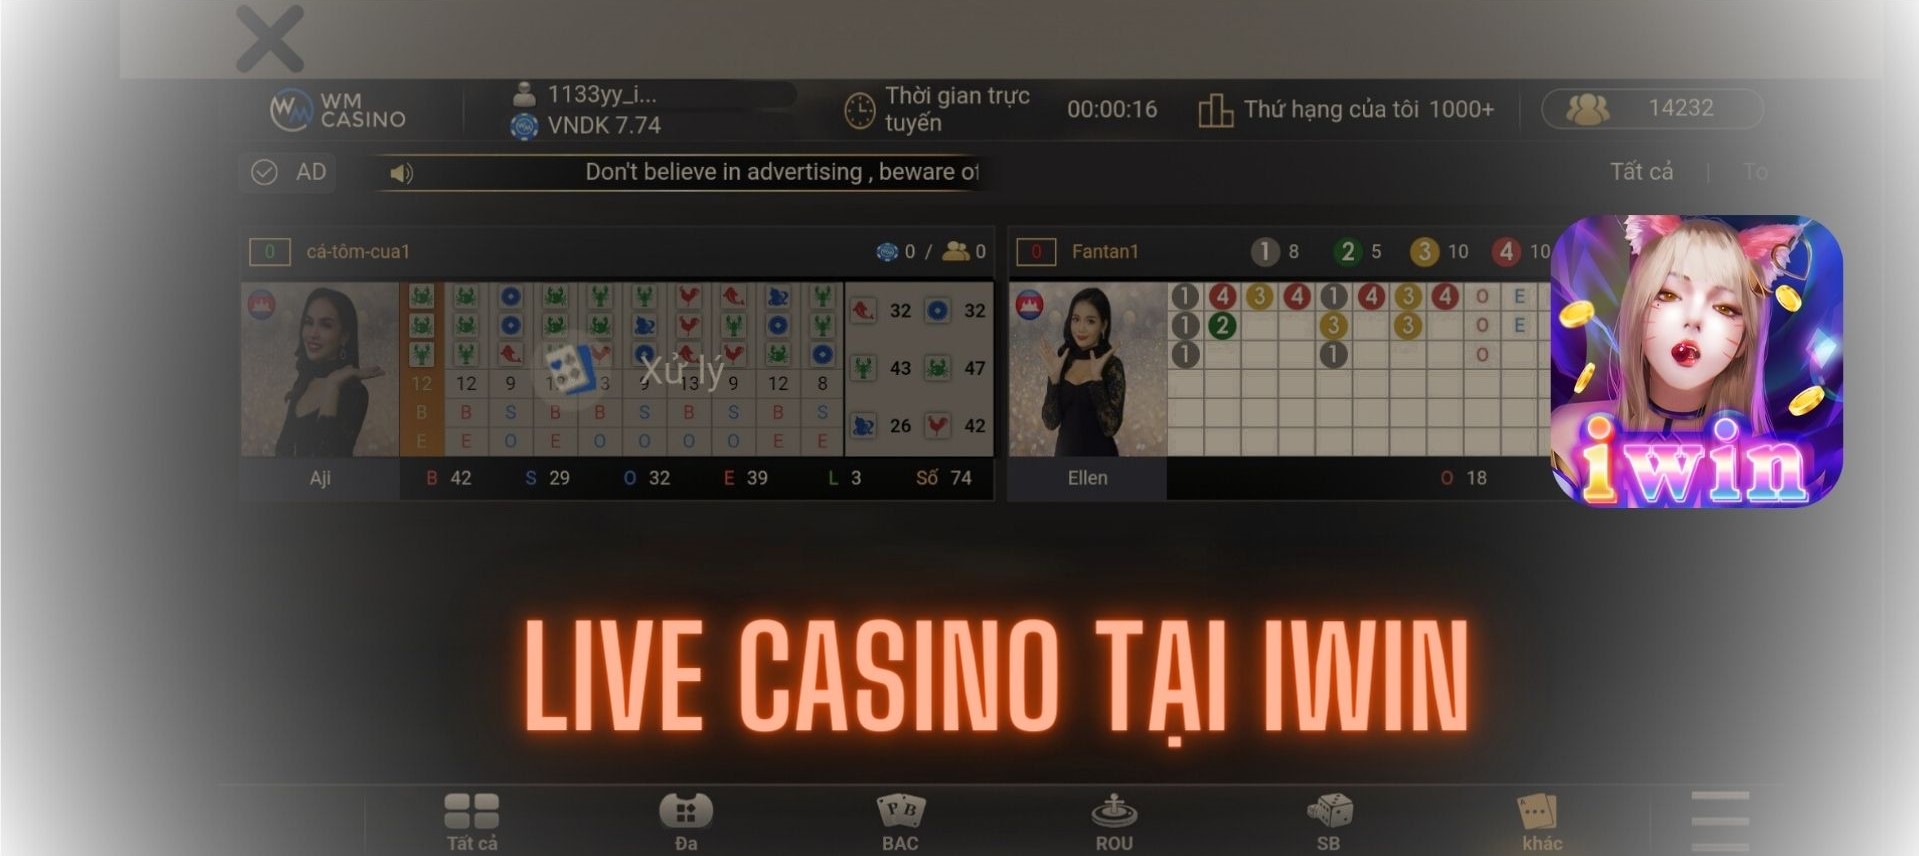 Cá cược live casino IWIN siêu hiện đại